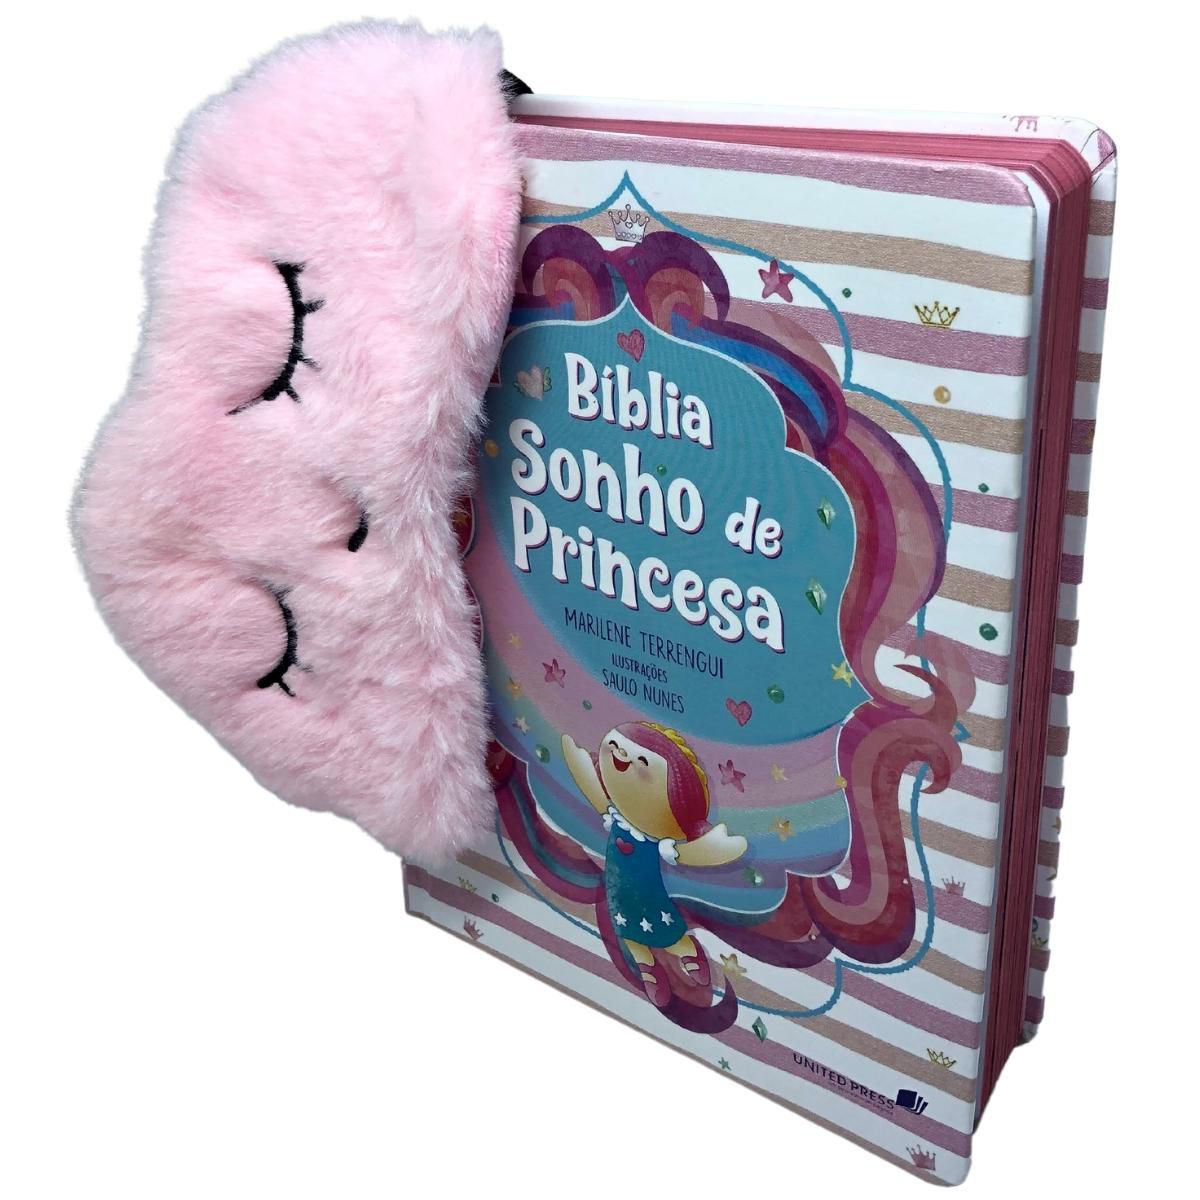 História Bíblica Infantil para Meninas - Paperly Papelaria